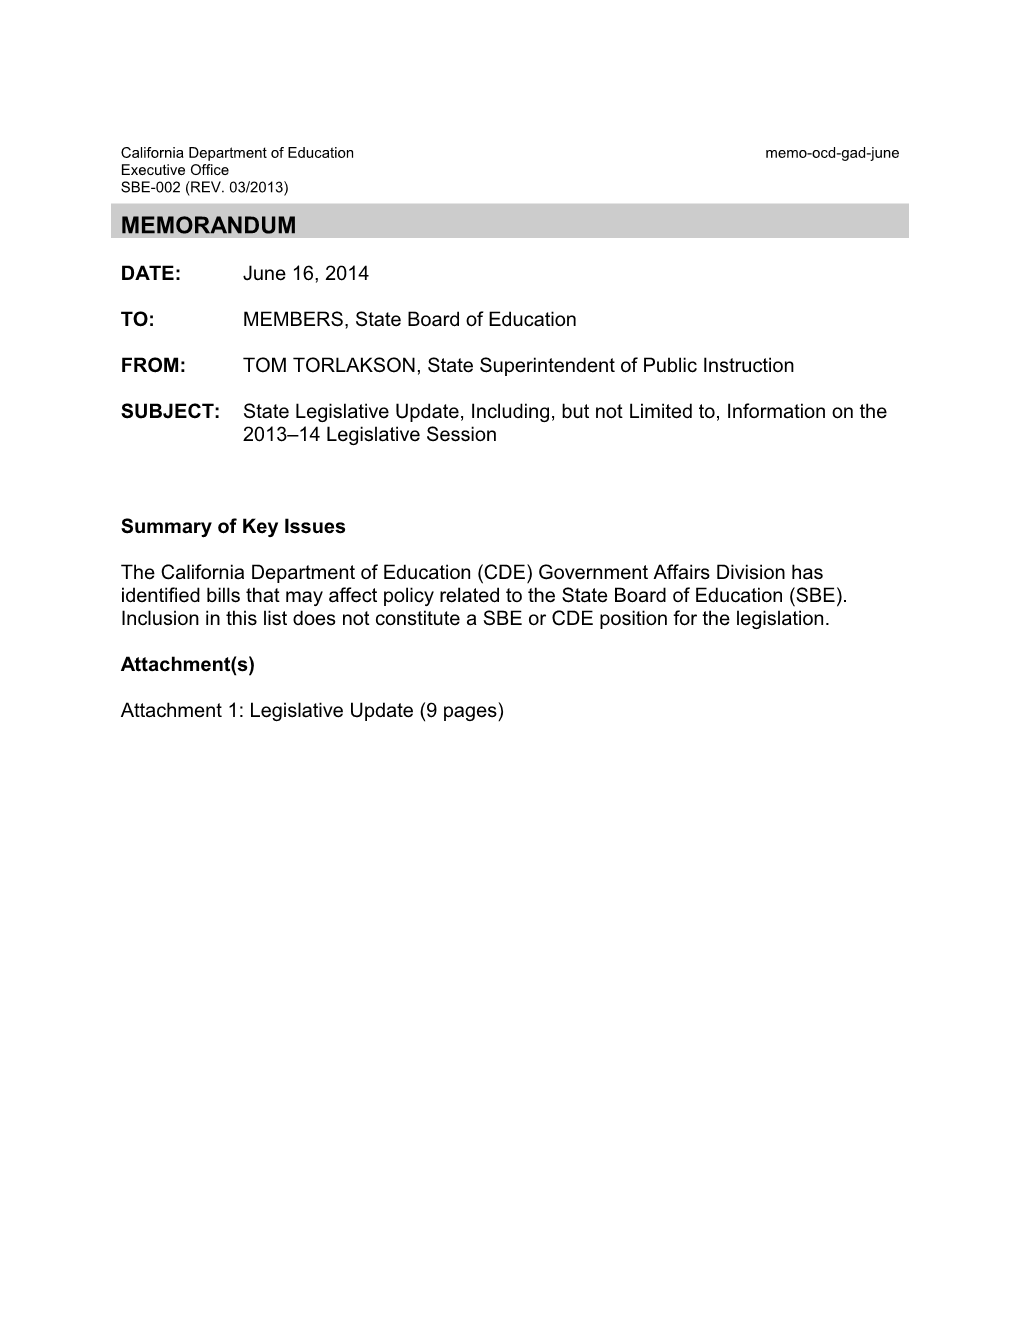 June 2014 Memorandum GAD Item 01 - Information Memorandum (CA State Board of Education)